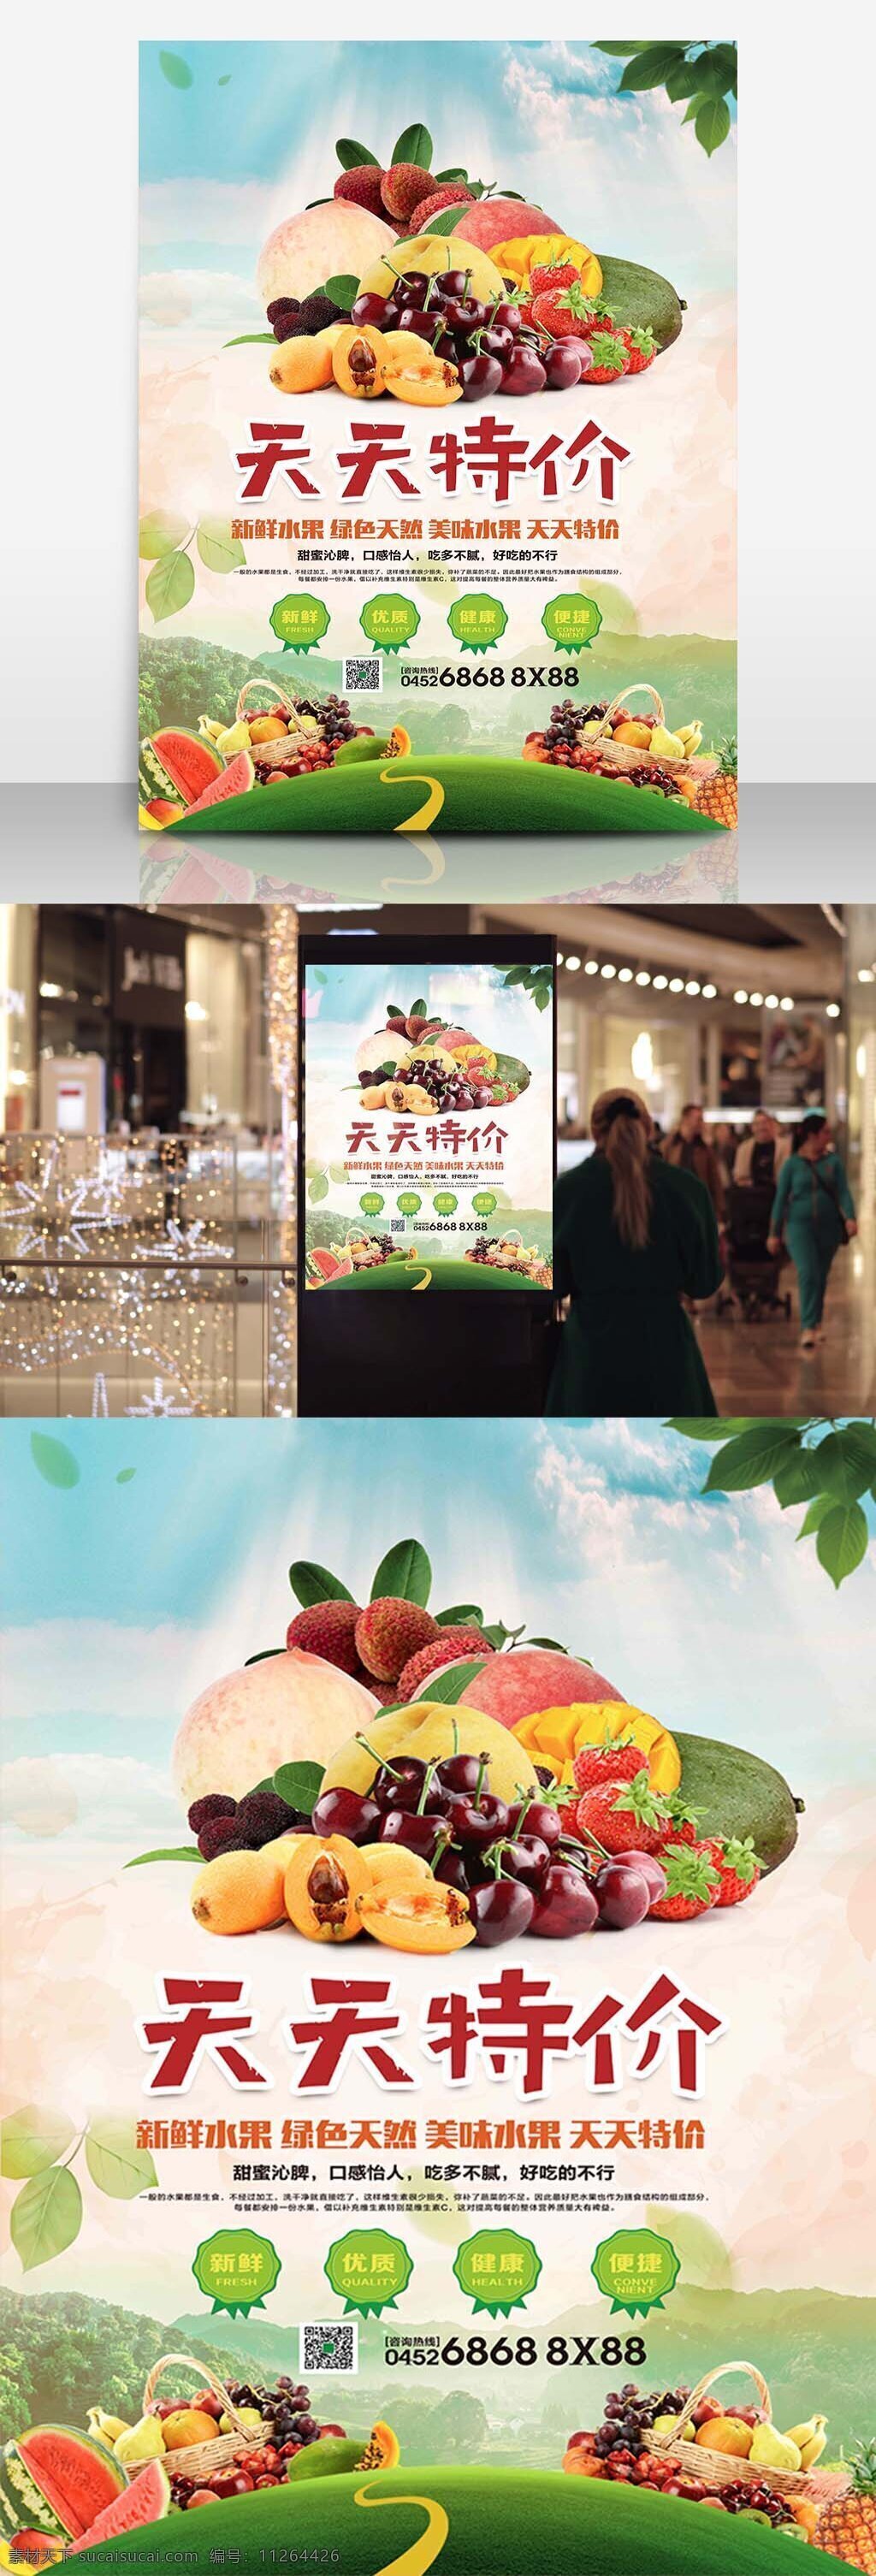 夏季 水果 天天 特价 水果店 促销 海报